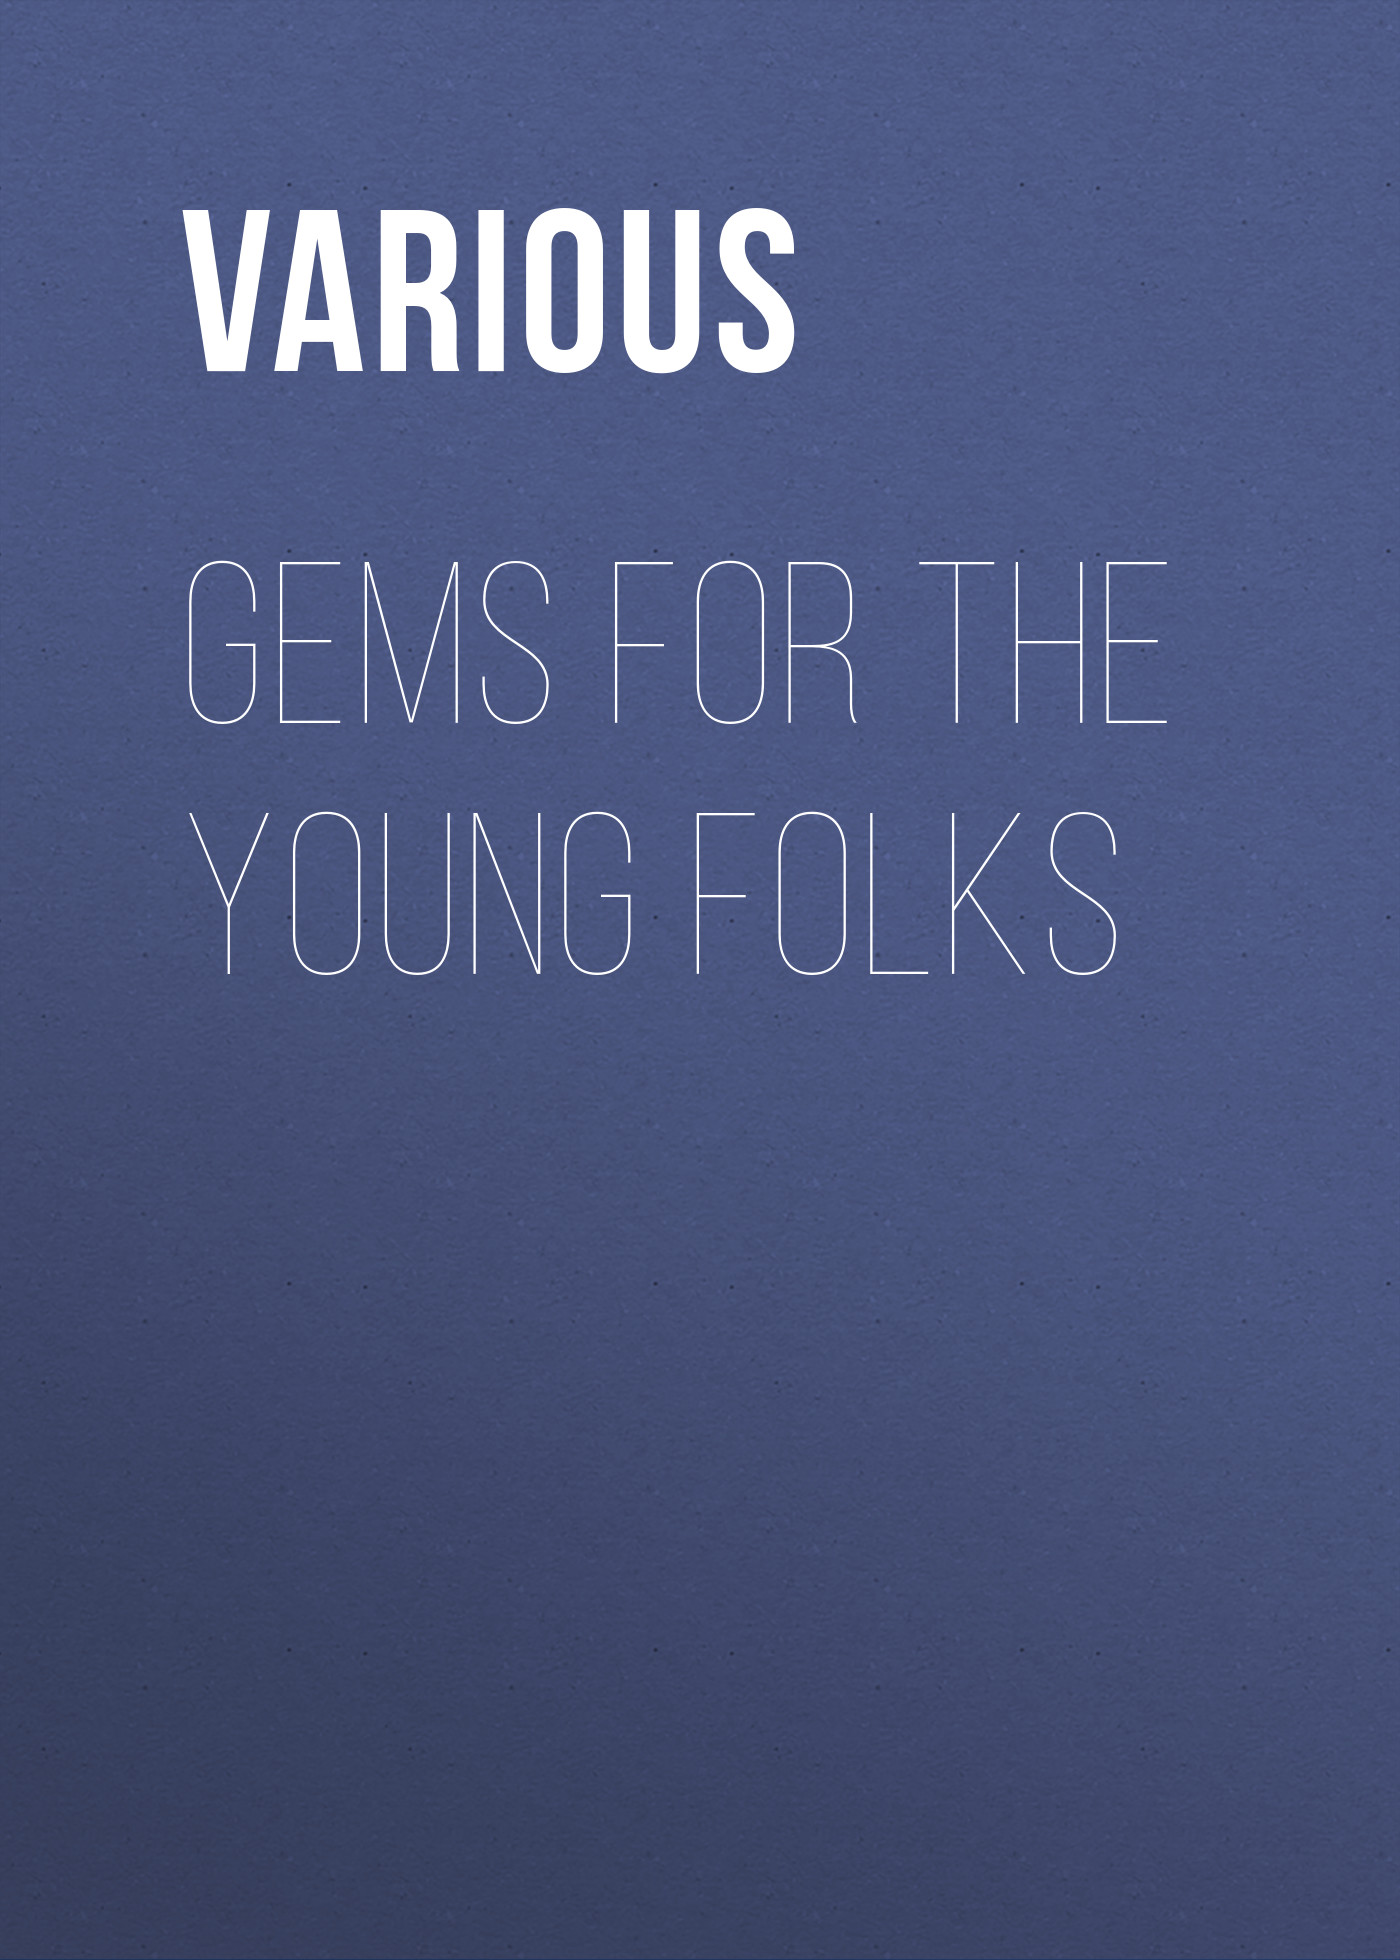 Книга Gems for the Young Folks из серии , созданная  Various, может относится к жанру Религия: прочее, Зарубежная эзотерическая и религиозная литература. Стоимость электронной книги Gems for the Young Folks с идентификатором 25715524 составляет 0 руб.